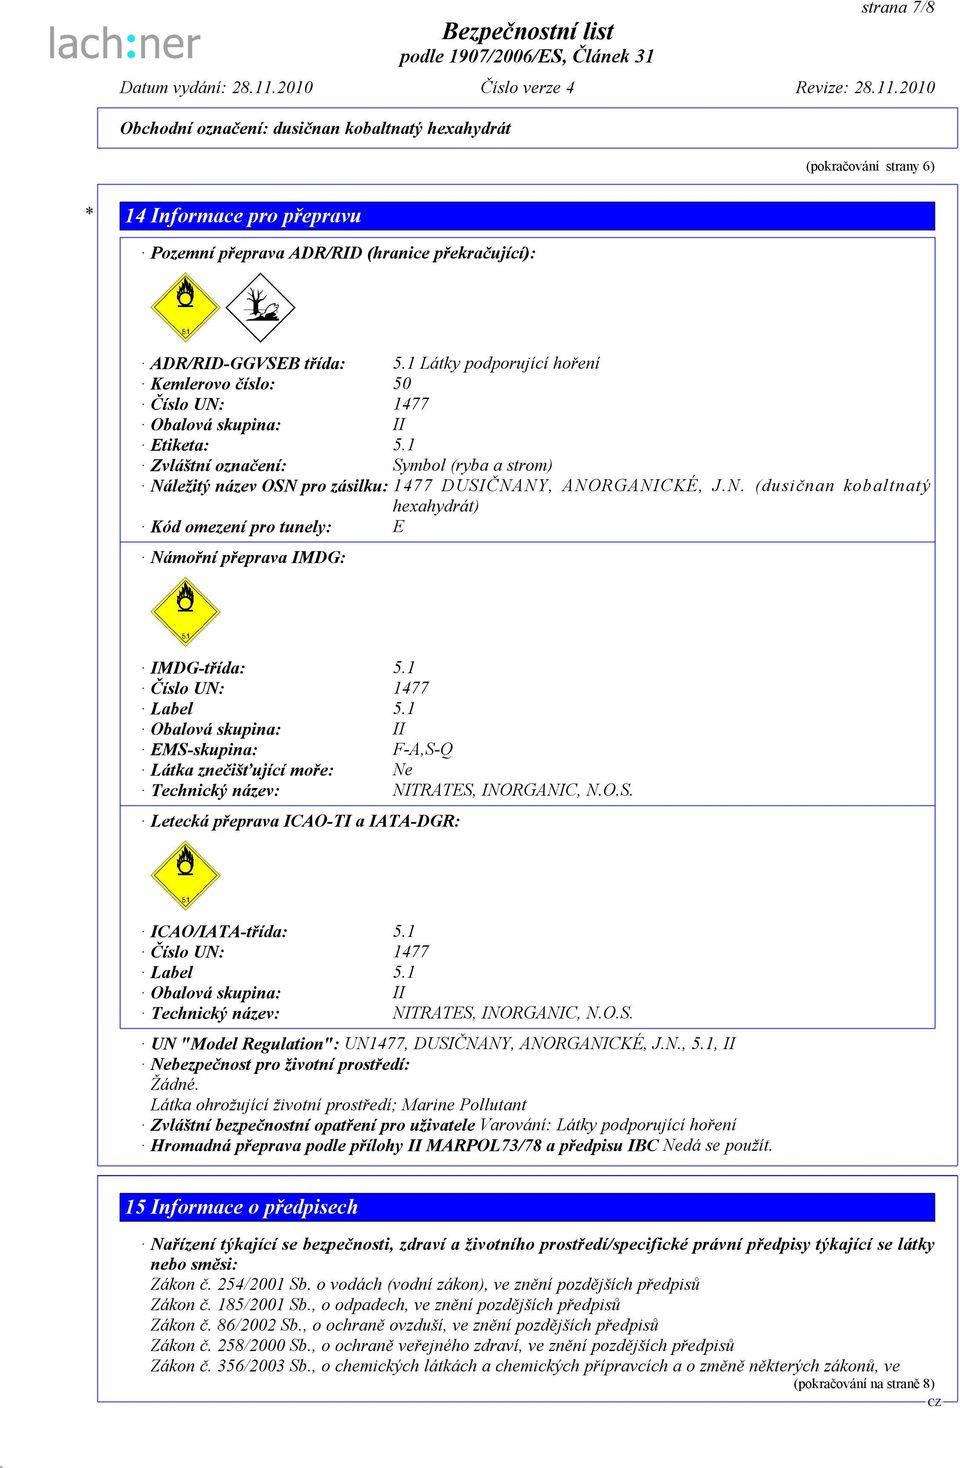 N. (dusičnan kobaltnatý hexahydrát) Kód omezení pro tunely: E Námořní přeprava IMDG: IMDG-třída: 5.1 Číslo UN: 1477 Label 5.